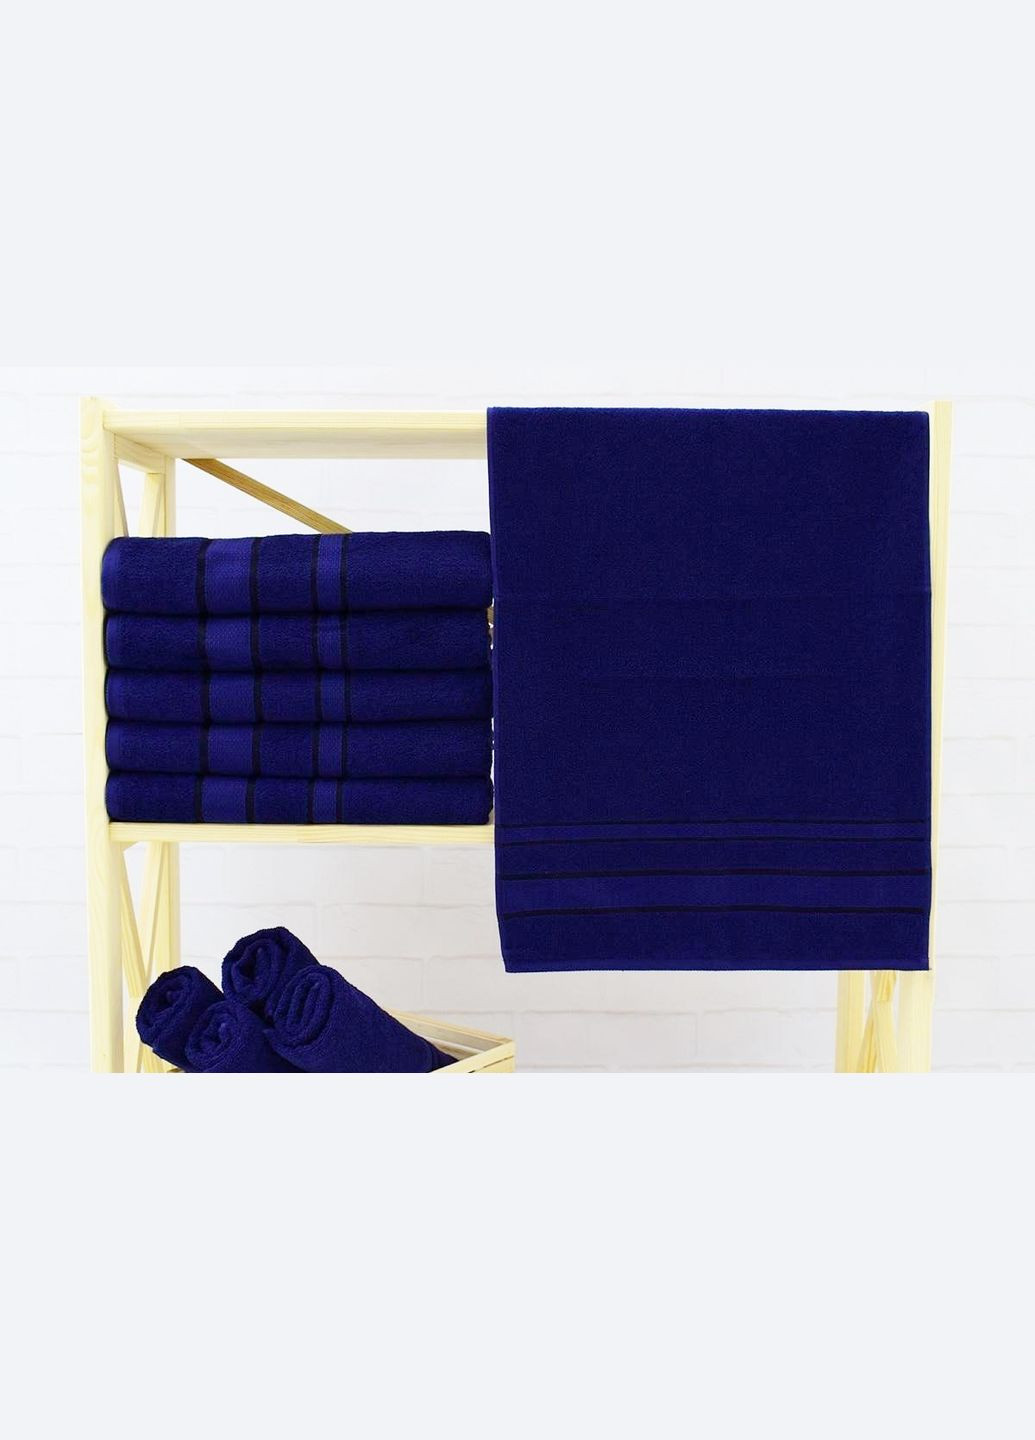 Fadolli Ricci полотенце махровое — темно-синее 50*90 (400 г/м²) темно-синий производство -